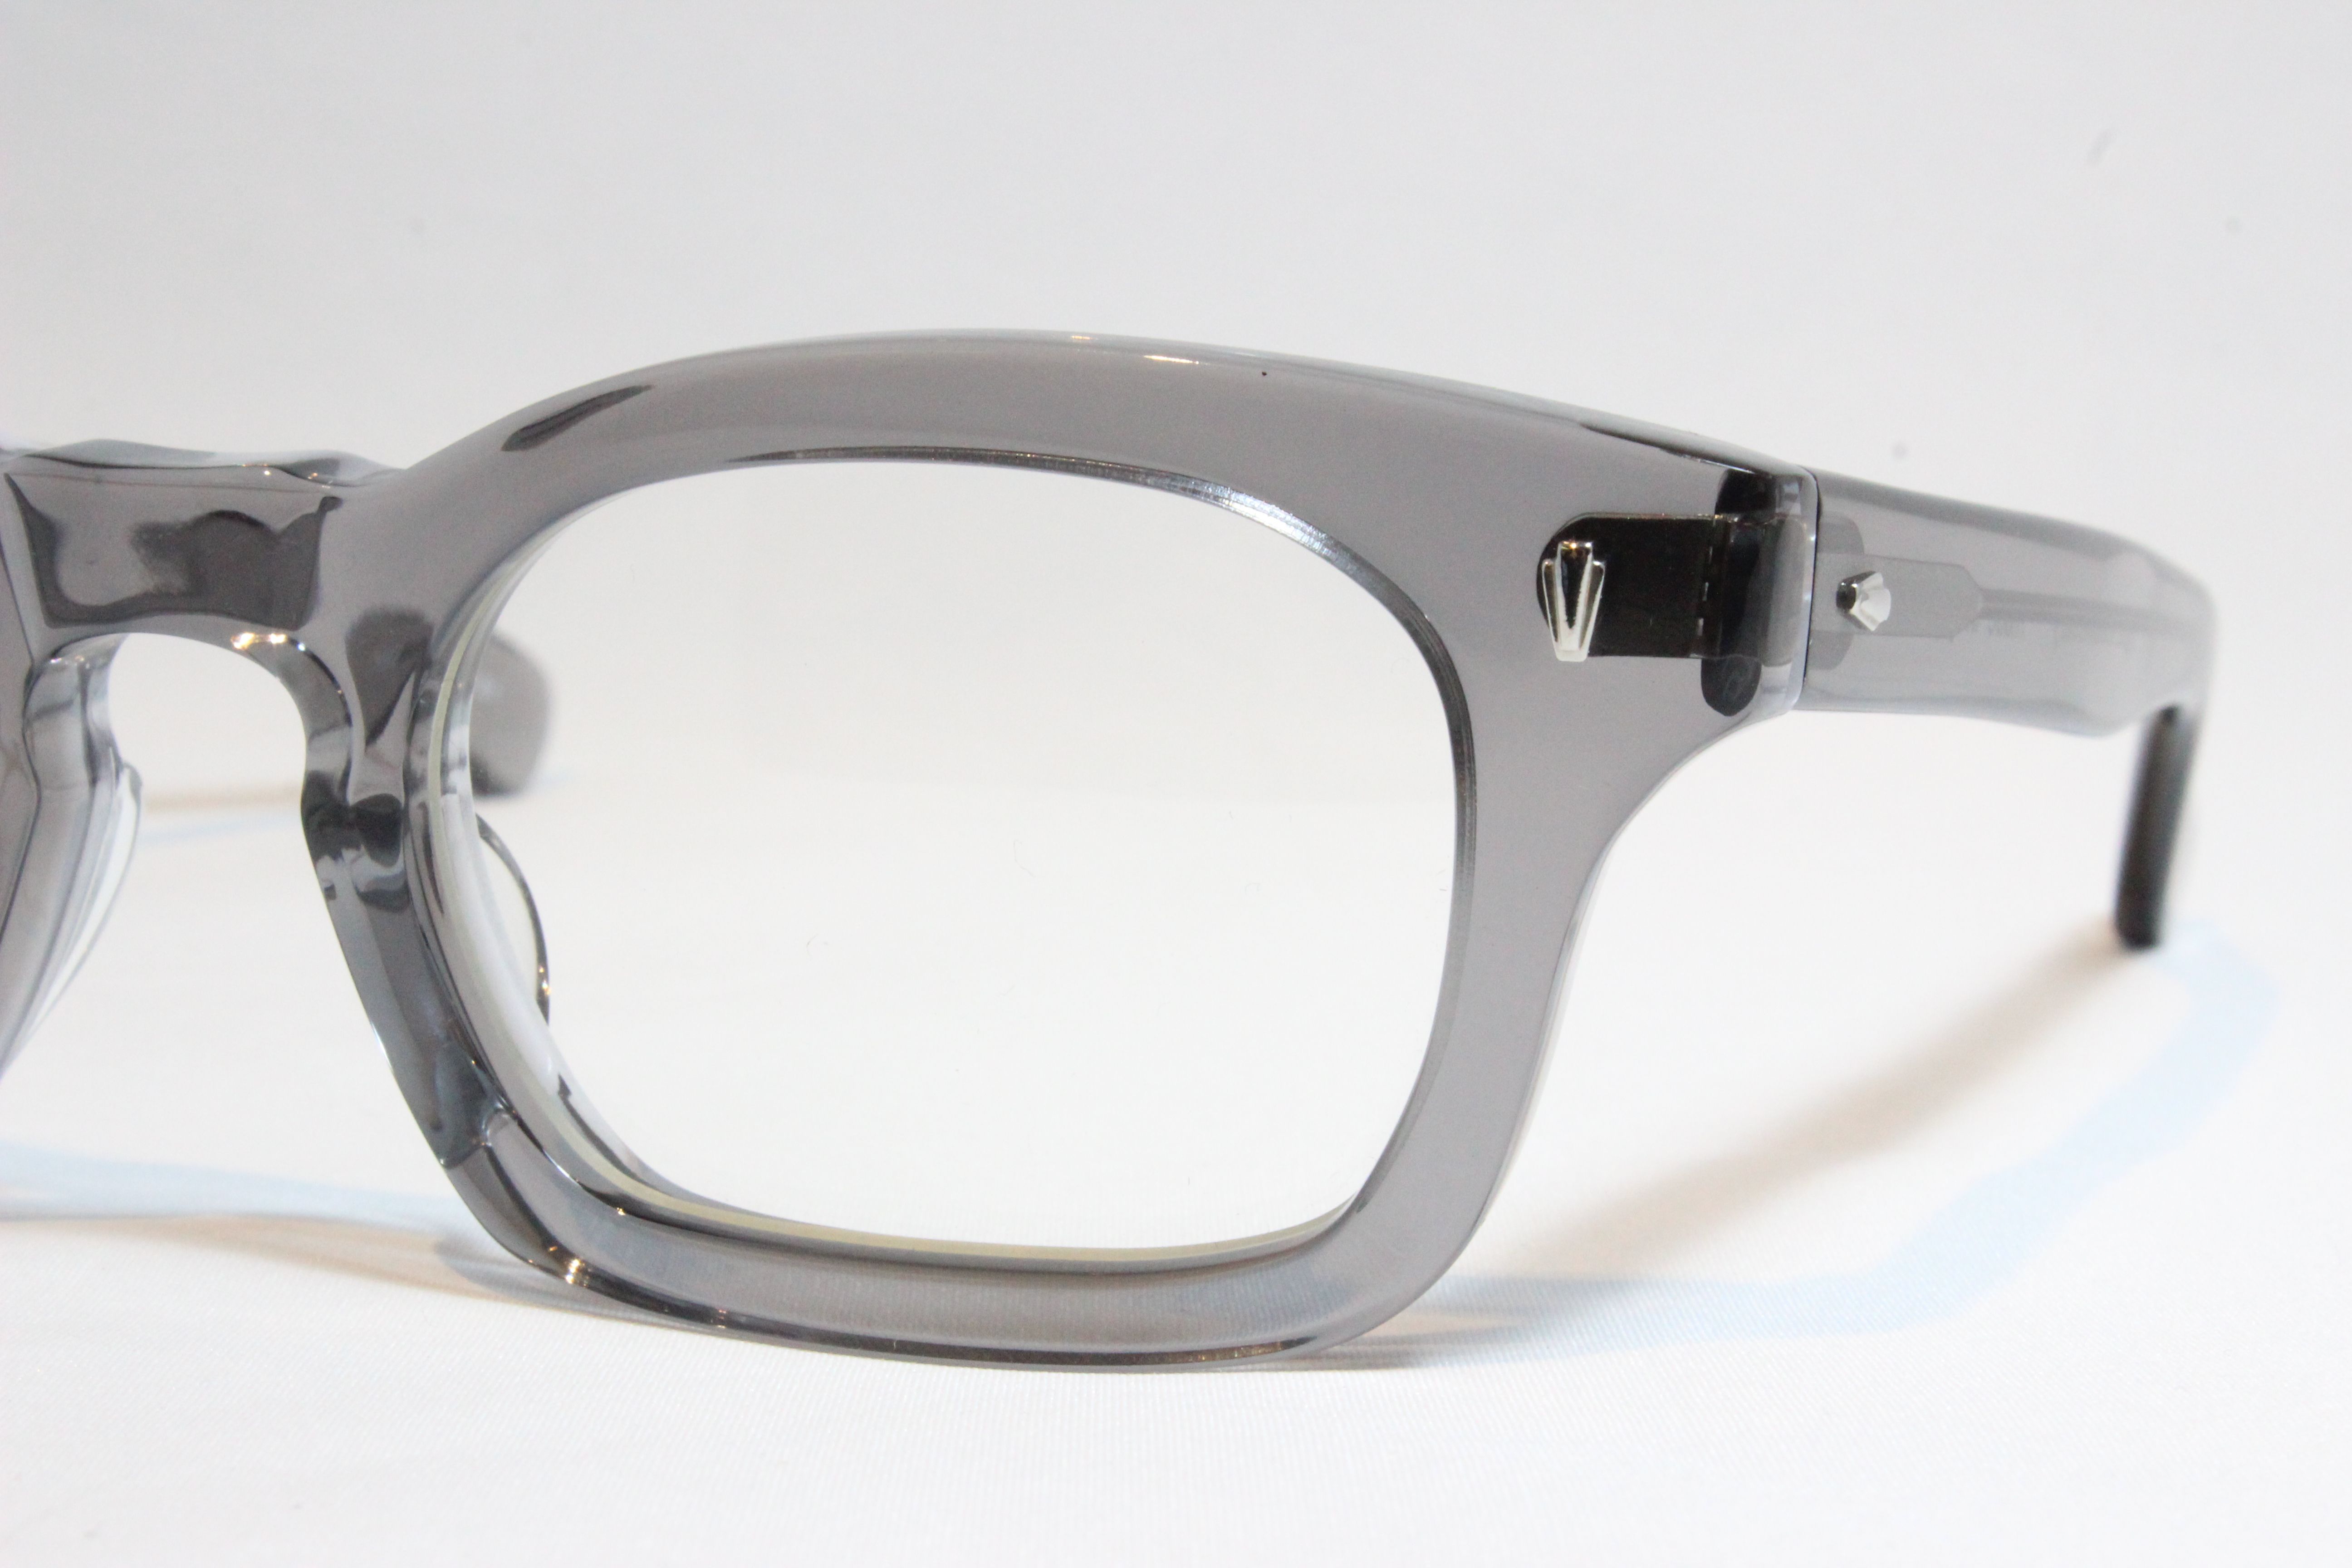 最高品質の限定商品  エフェクター　クリア　メガネ effector サングラス/メガネ